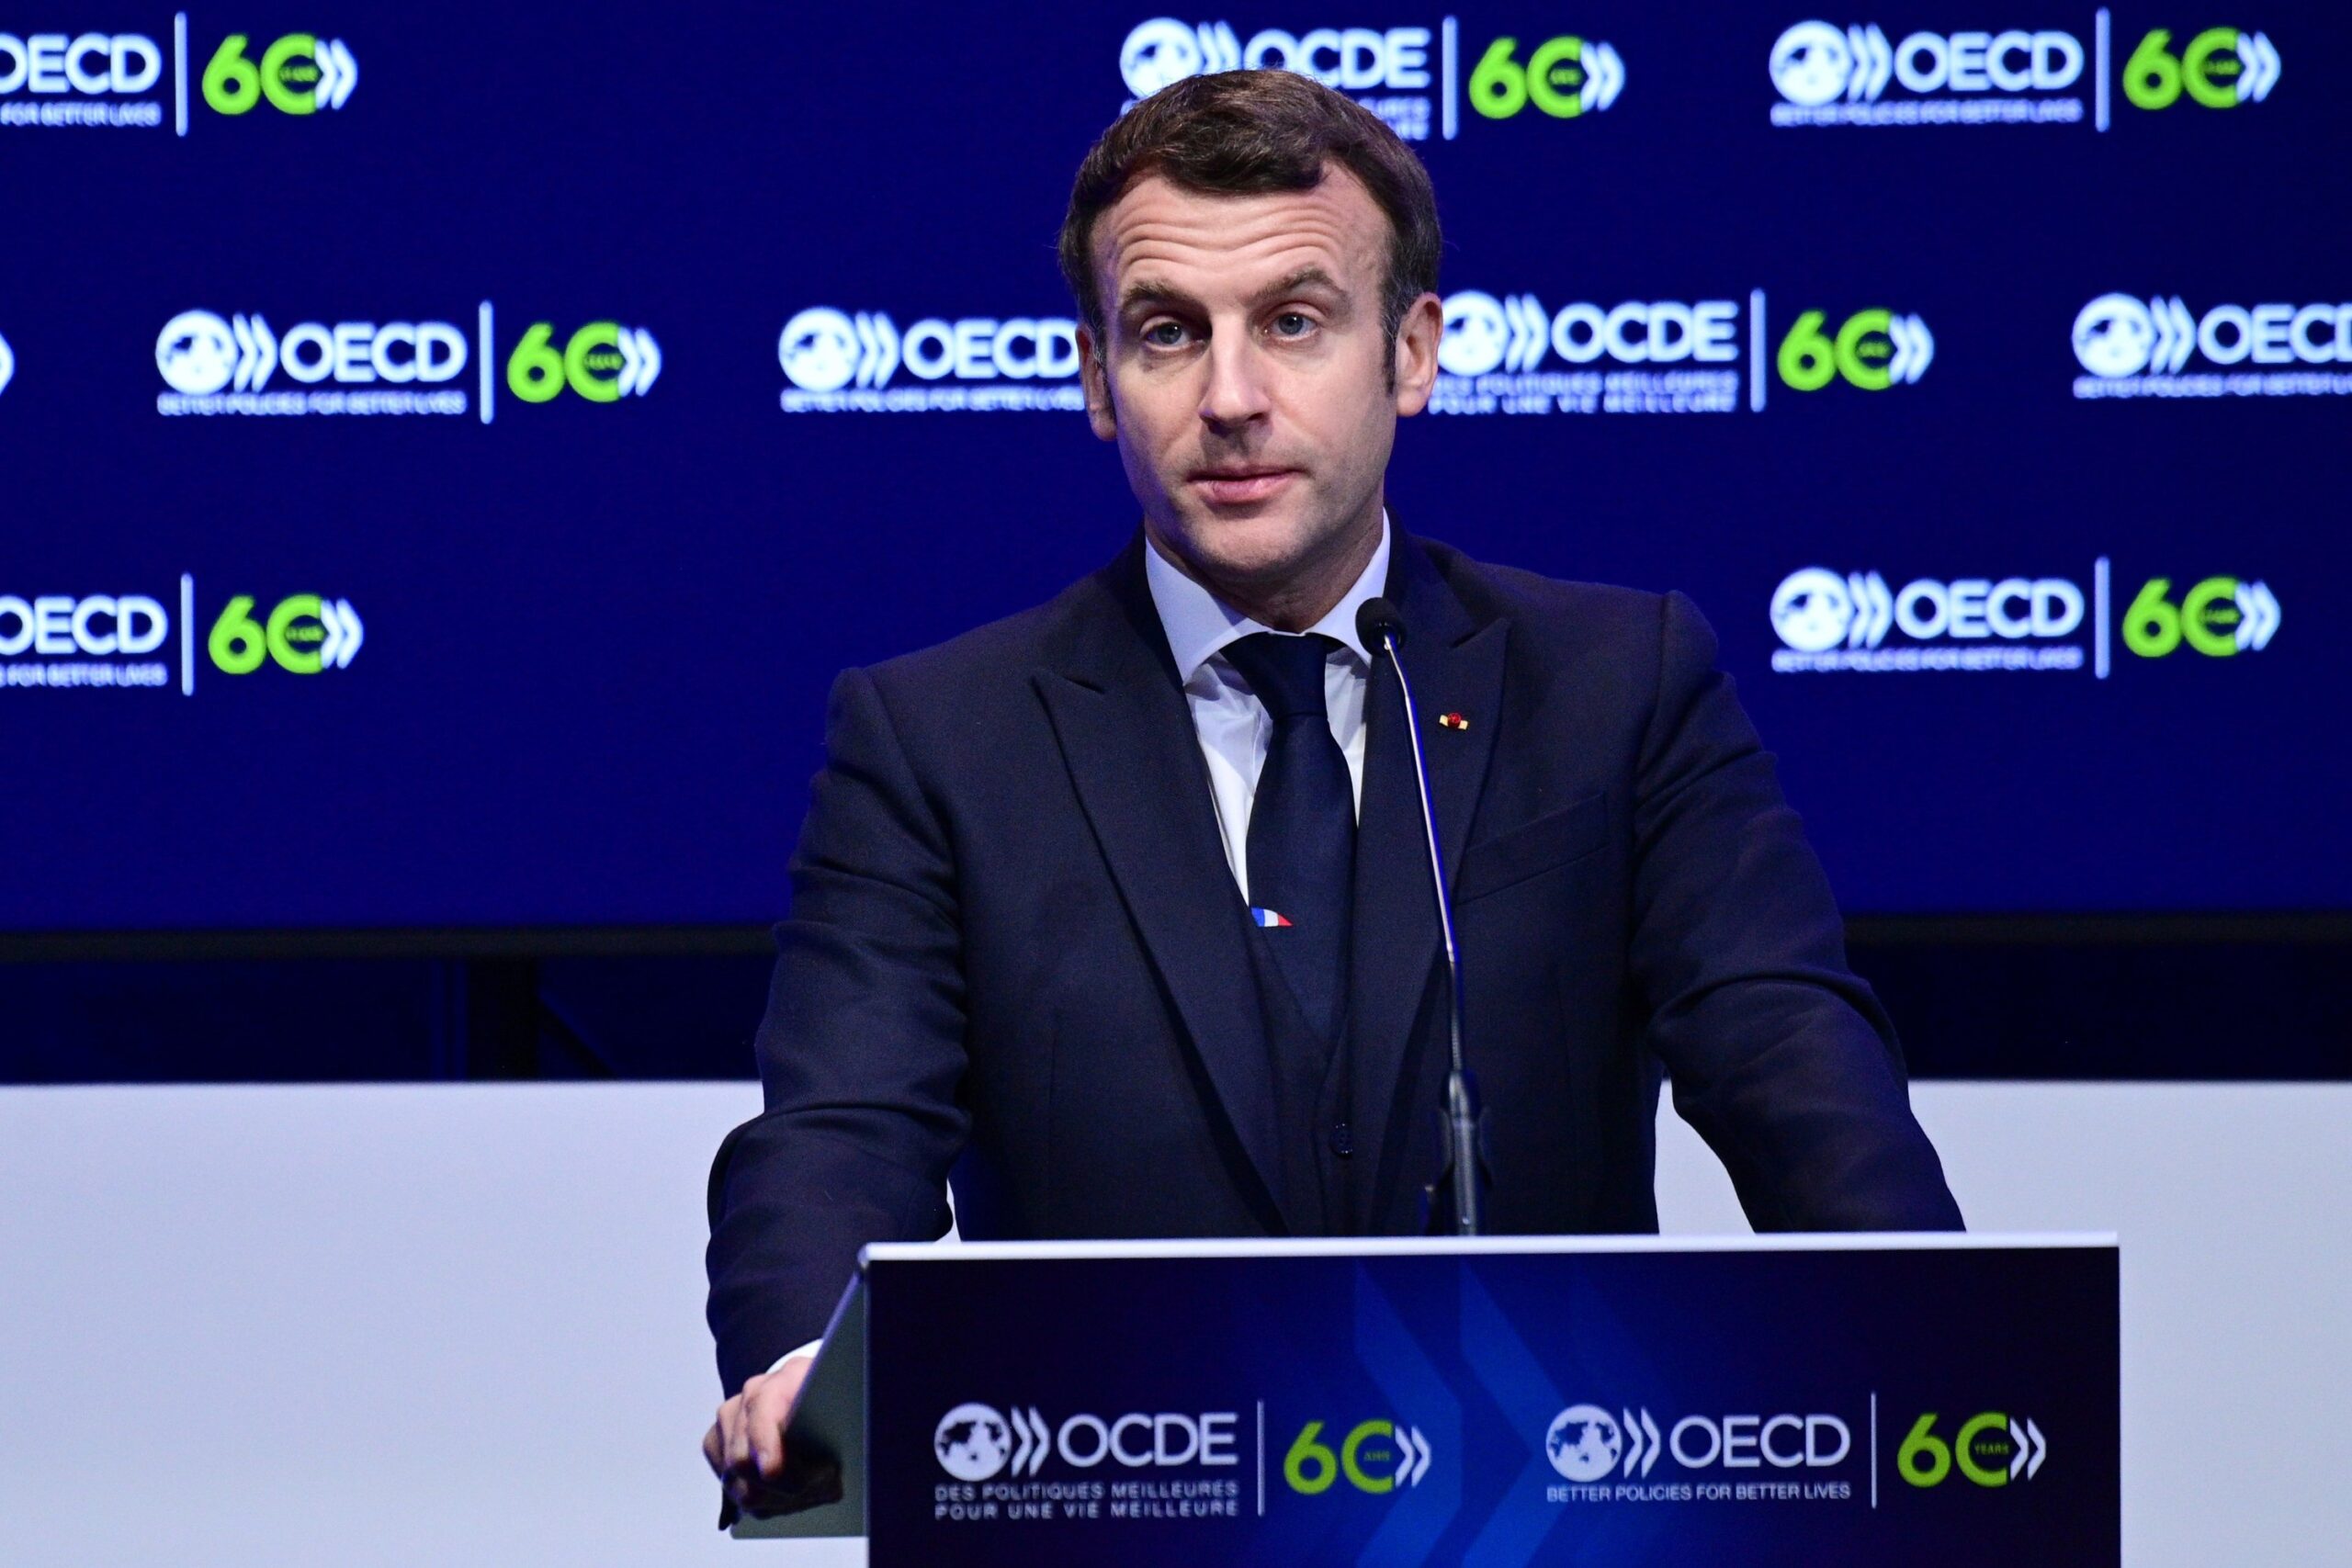 Nuk shpëtojnë as krerët e shteteve,  Presidenti francez Macron pozitiv me COVID-19